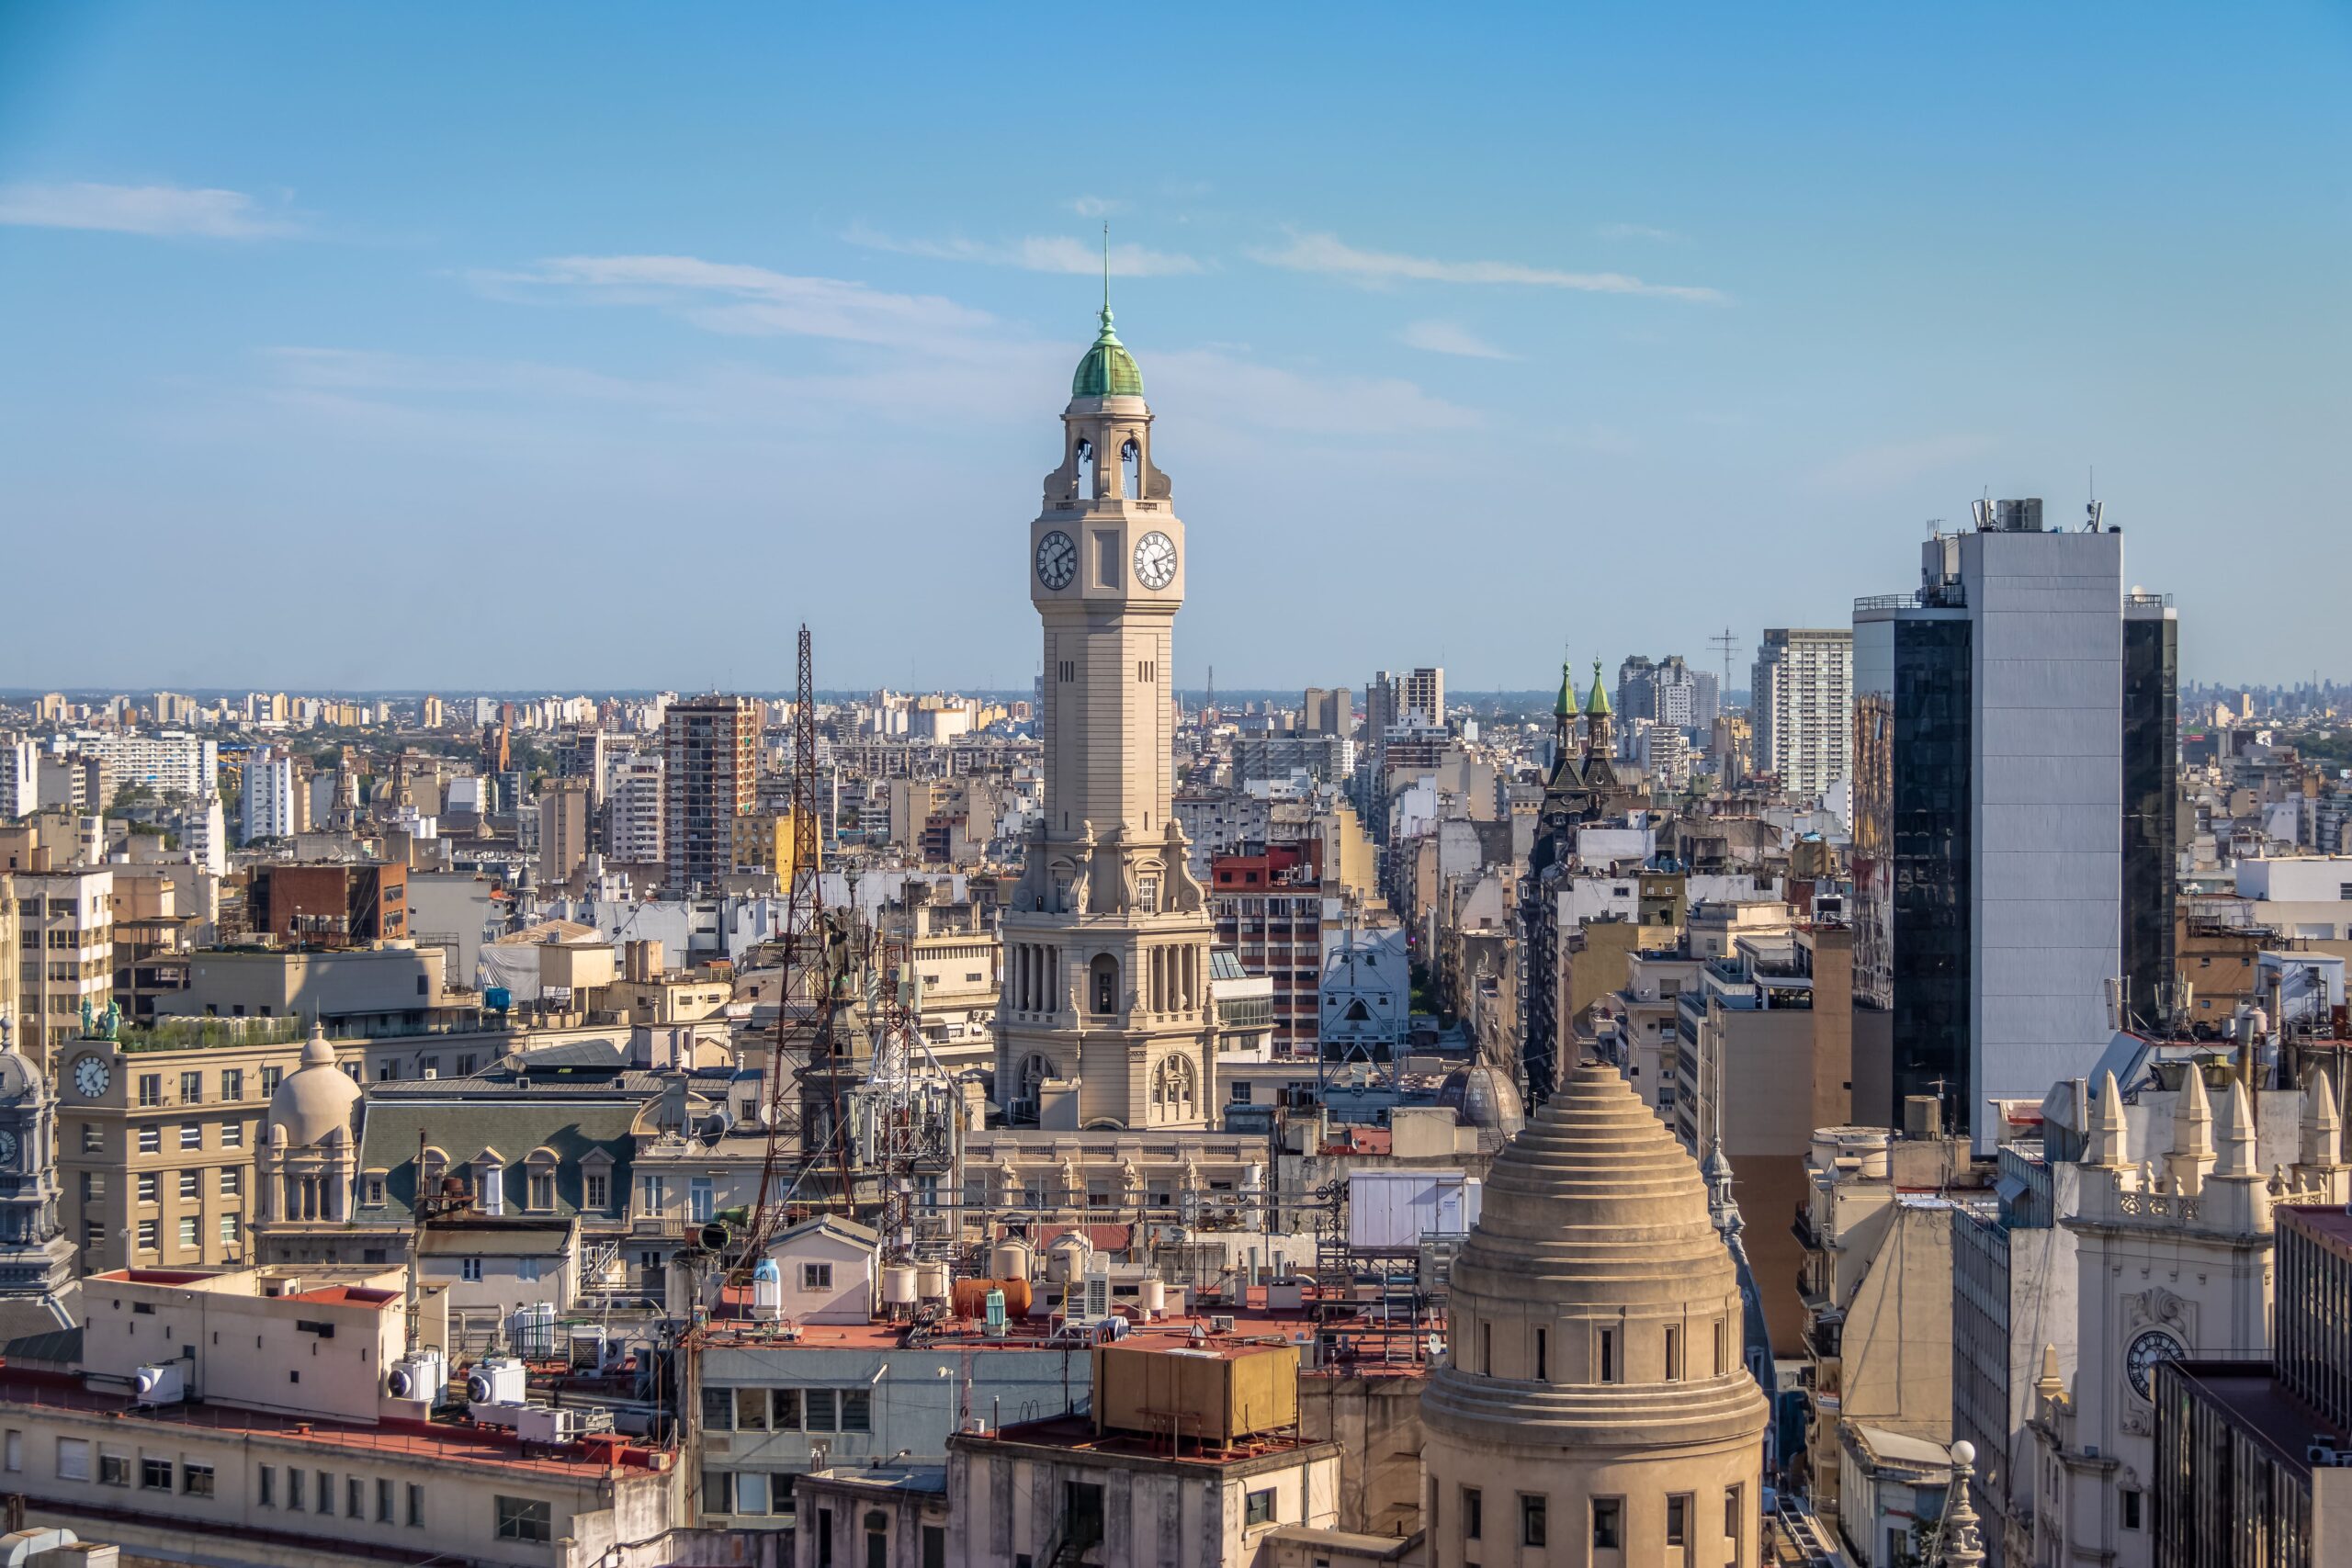 Vista aérea da cidade de Buenos Aires, mostrando a Torre da Legislatura e uma paisagem urbana variada, com edifícios de diferentes estilos arquitetônicos e alturas. O céu é claro, indicando um dia ensolarado.